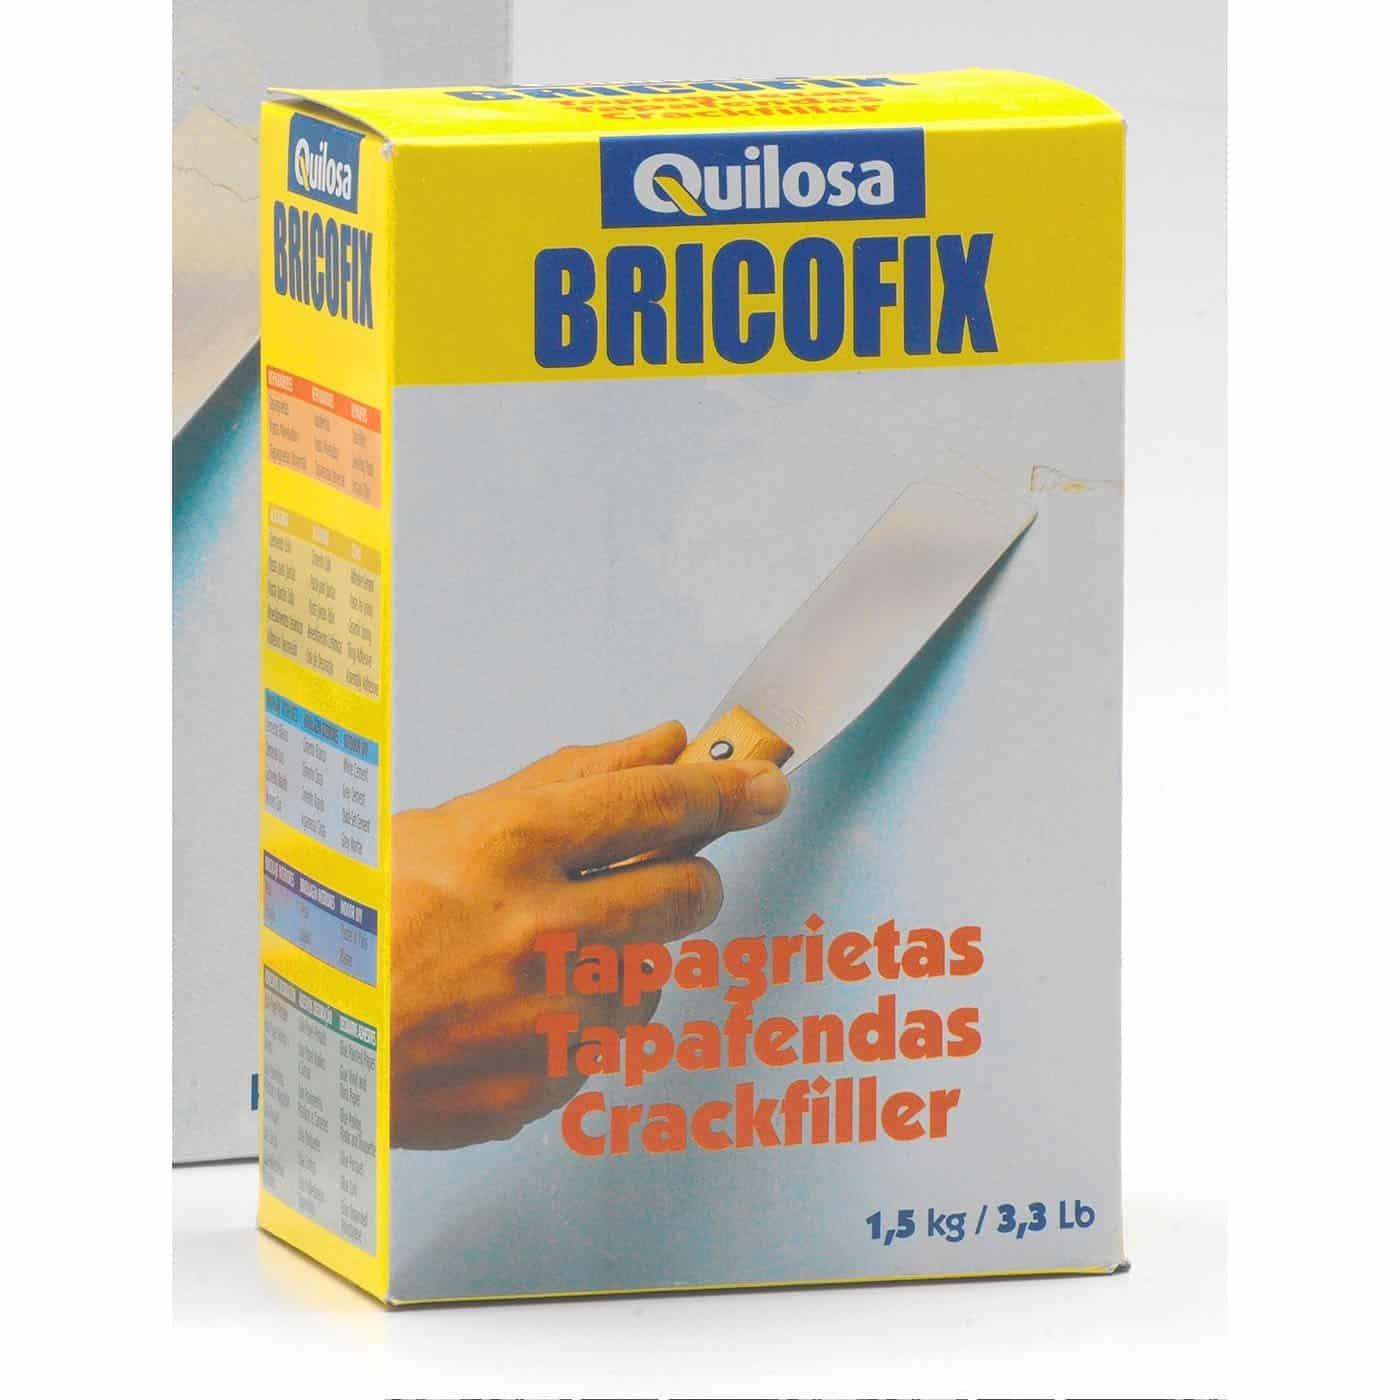 TAPA GRIETAS BRICOFIX 1,5 KG QUILOSA